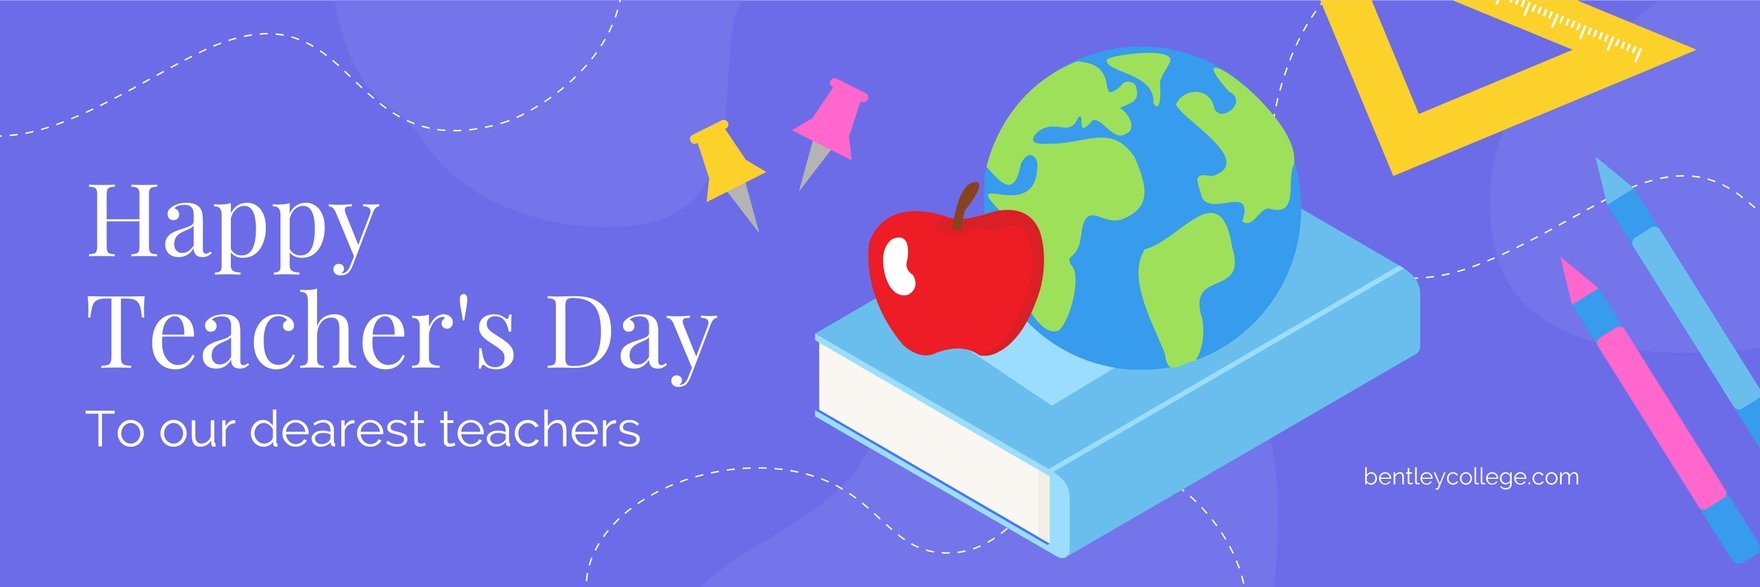 Teacher's Day Twitter Banner